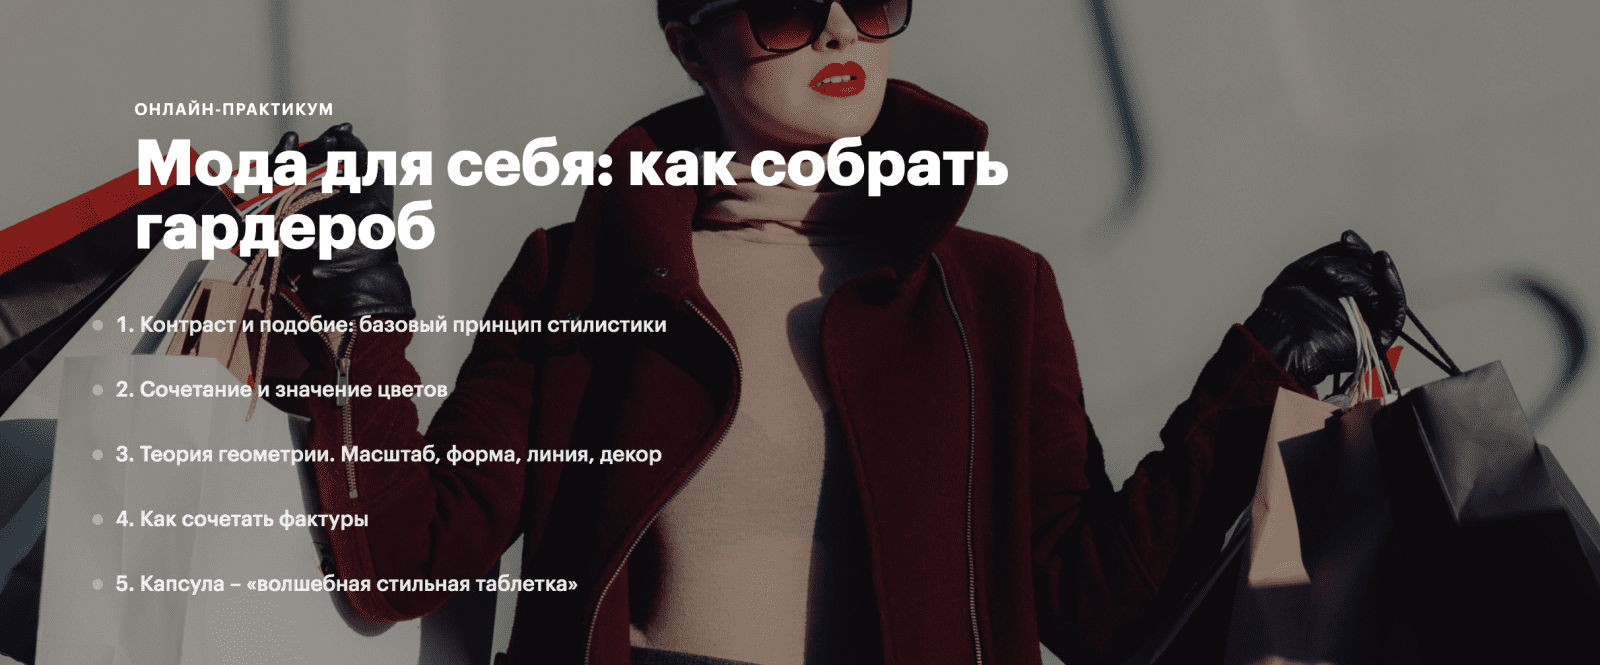 Изображение [levelvan] Наталия Котляревская - Мода для себя: как собрать гардероб (2020) в посте 252484